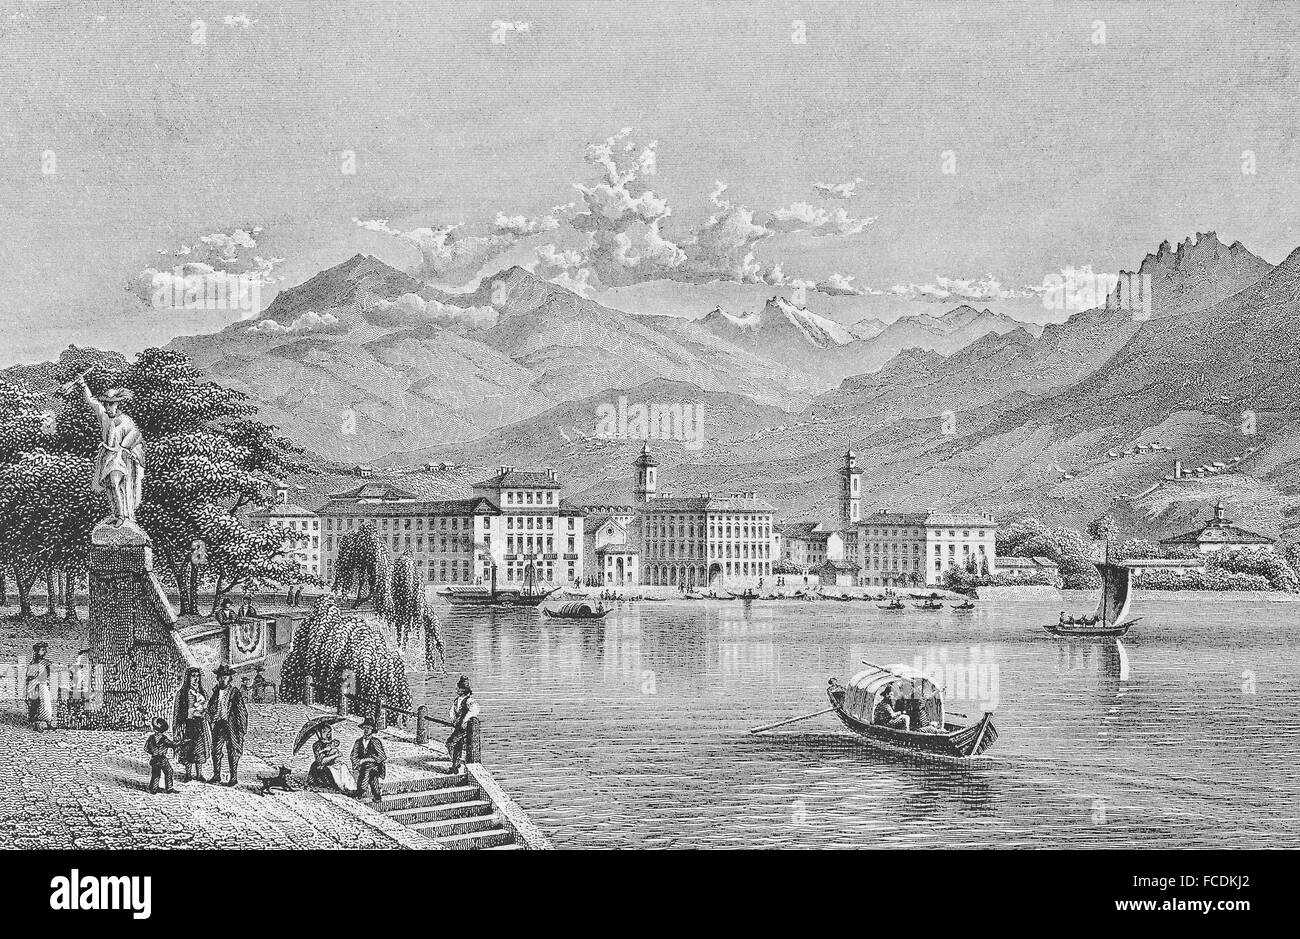 Paysage urbain historique, gravure sur acier, Lugano vers 1860, Canton du Tessin, Suisse Banque D'Images